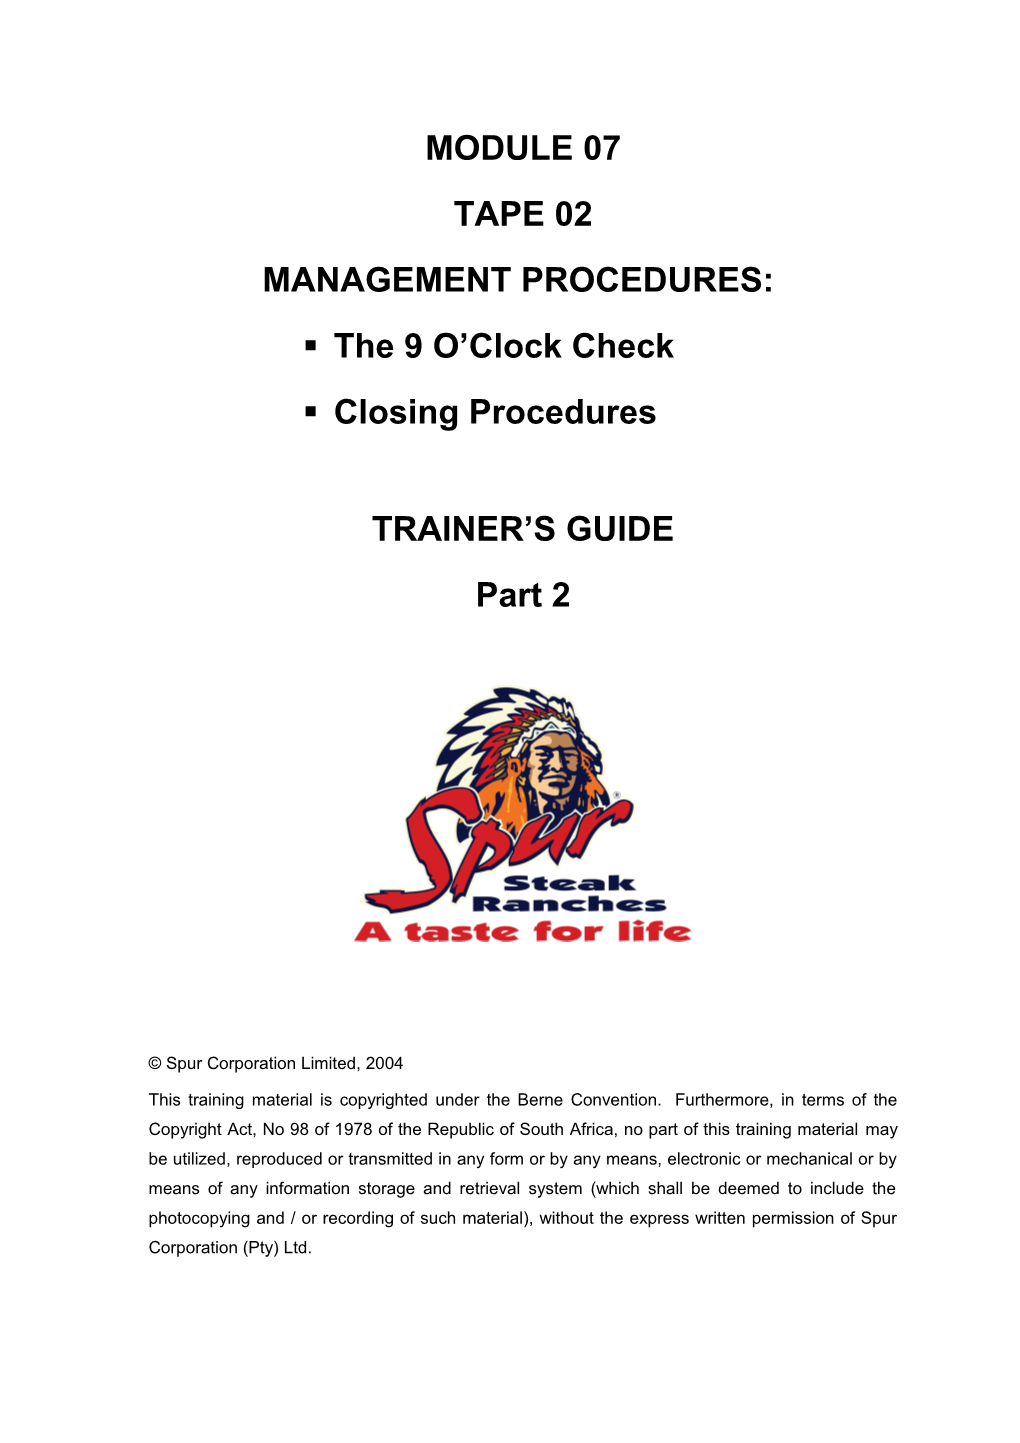 Management Procedures